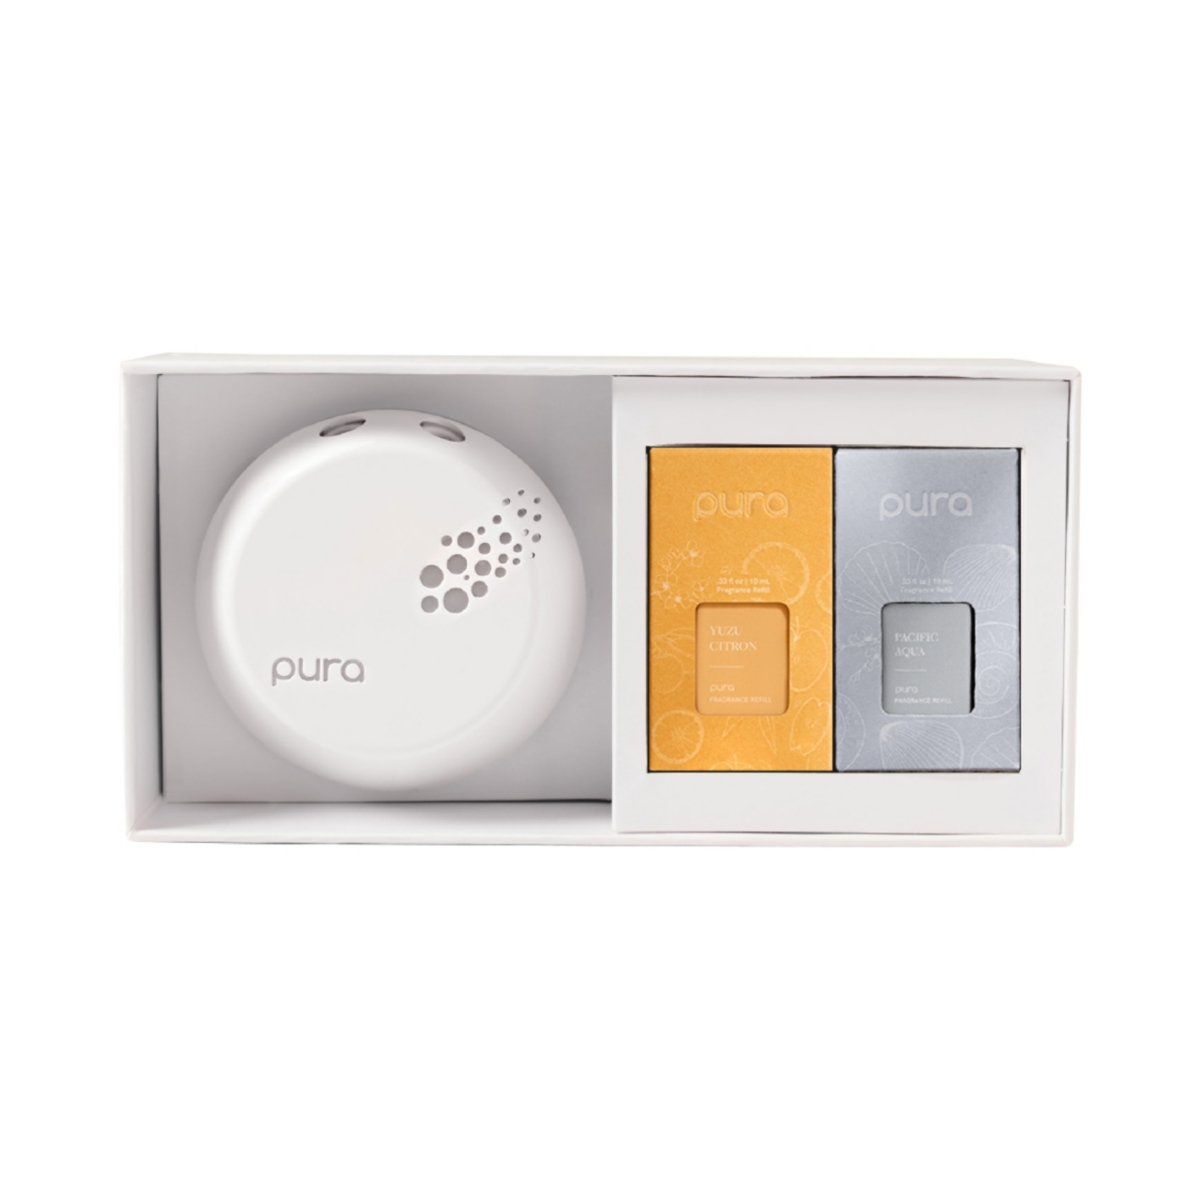 Smart Fragrance Diffuser Device Set - Pacific Aqua, Yuzu Citron - Home Scent Diffuser with Refills - Fragrance Diffuser - White